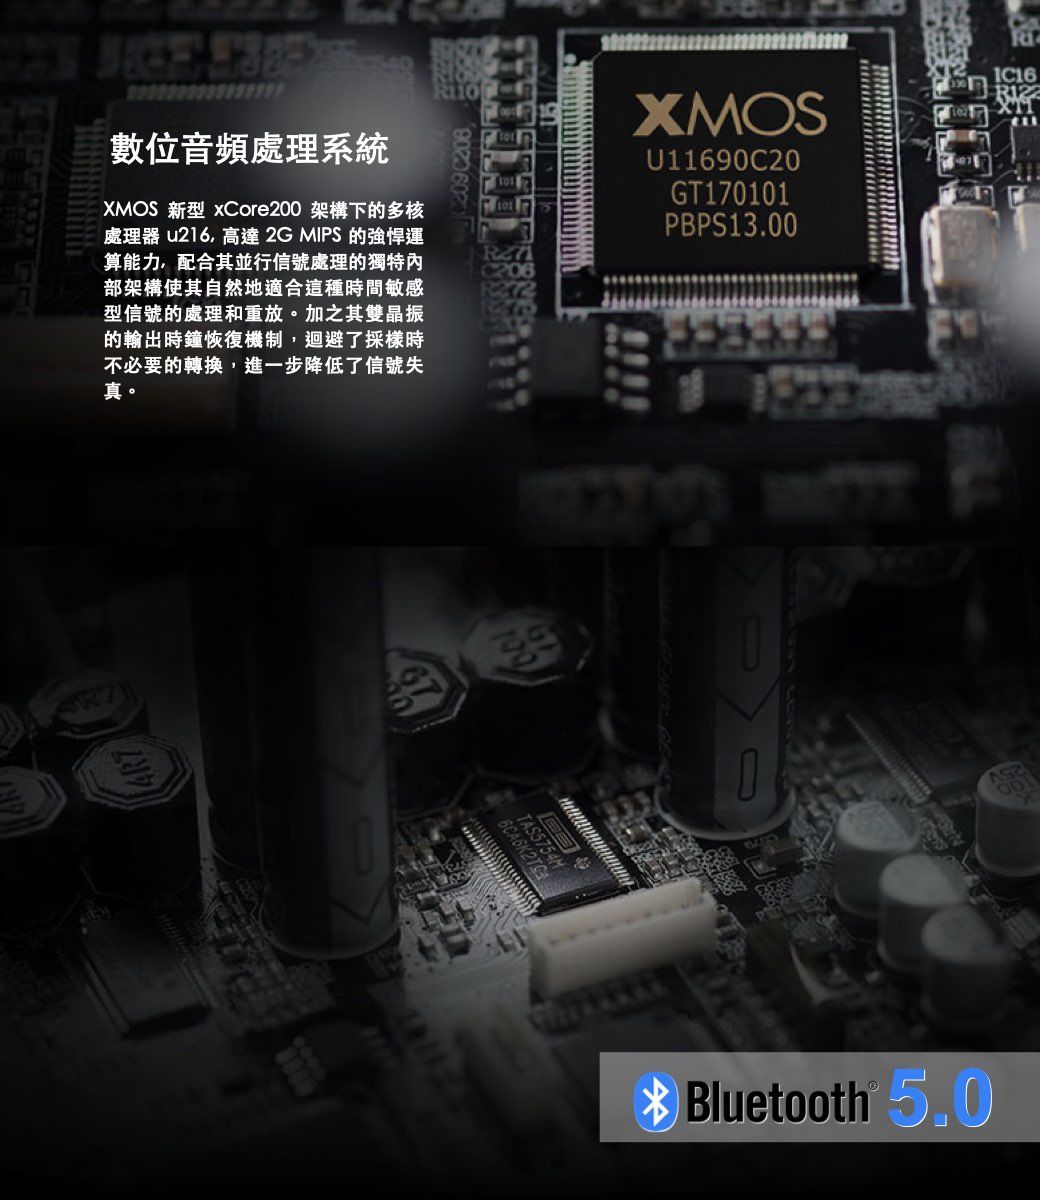 數位音頻處理系統XMOS 新型 Core200 架構下的多核處理器 u216高達 2G MIPS的強悍運算能力,配合其並行信號處理的獨特內部架構使其自然地適合這種時間敏感型信號的處理和重放。加之其雙晶振的輸出時鐘恢復機制,迴避了採樣時不必要的轉換,進一步降低了信號失真。XMOSU11690C20GT170101PBPS13.00TAS5754M Bluetooth